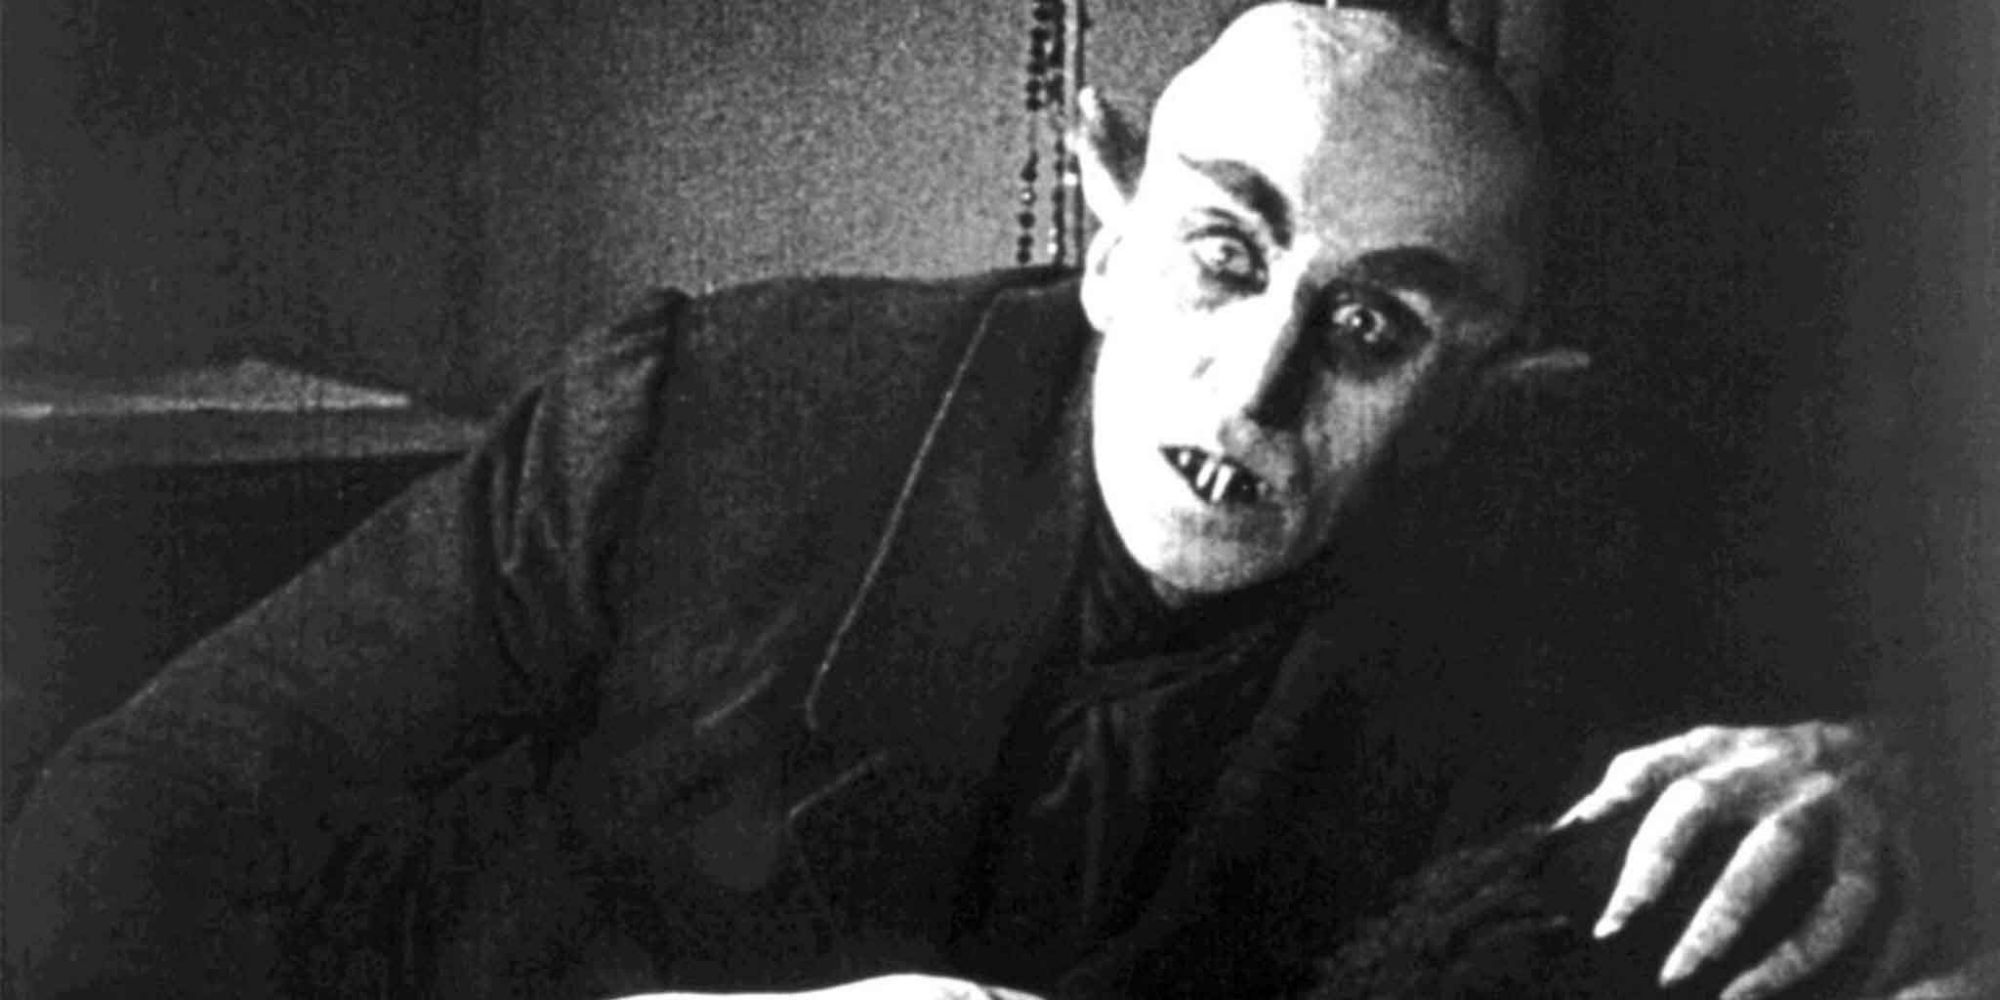 Nosferatu - Count Orlok